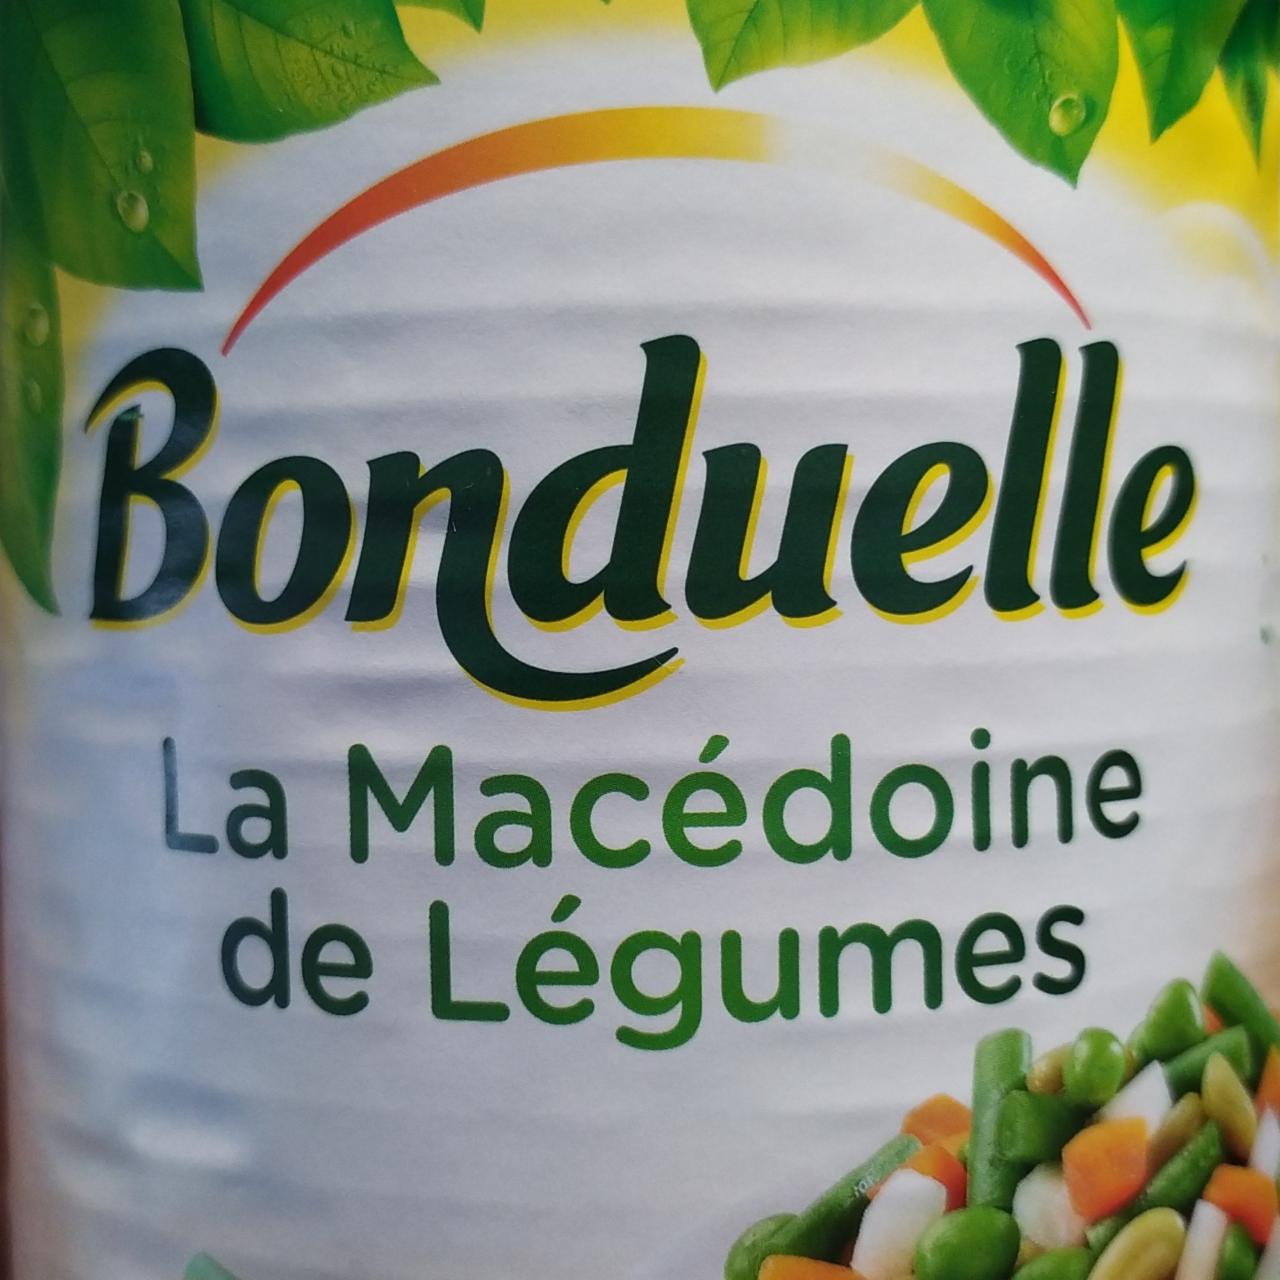 Fotografie - La Macedoine de Legumes Bonduelle